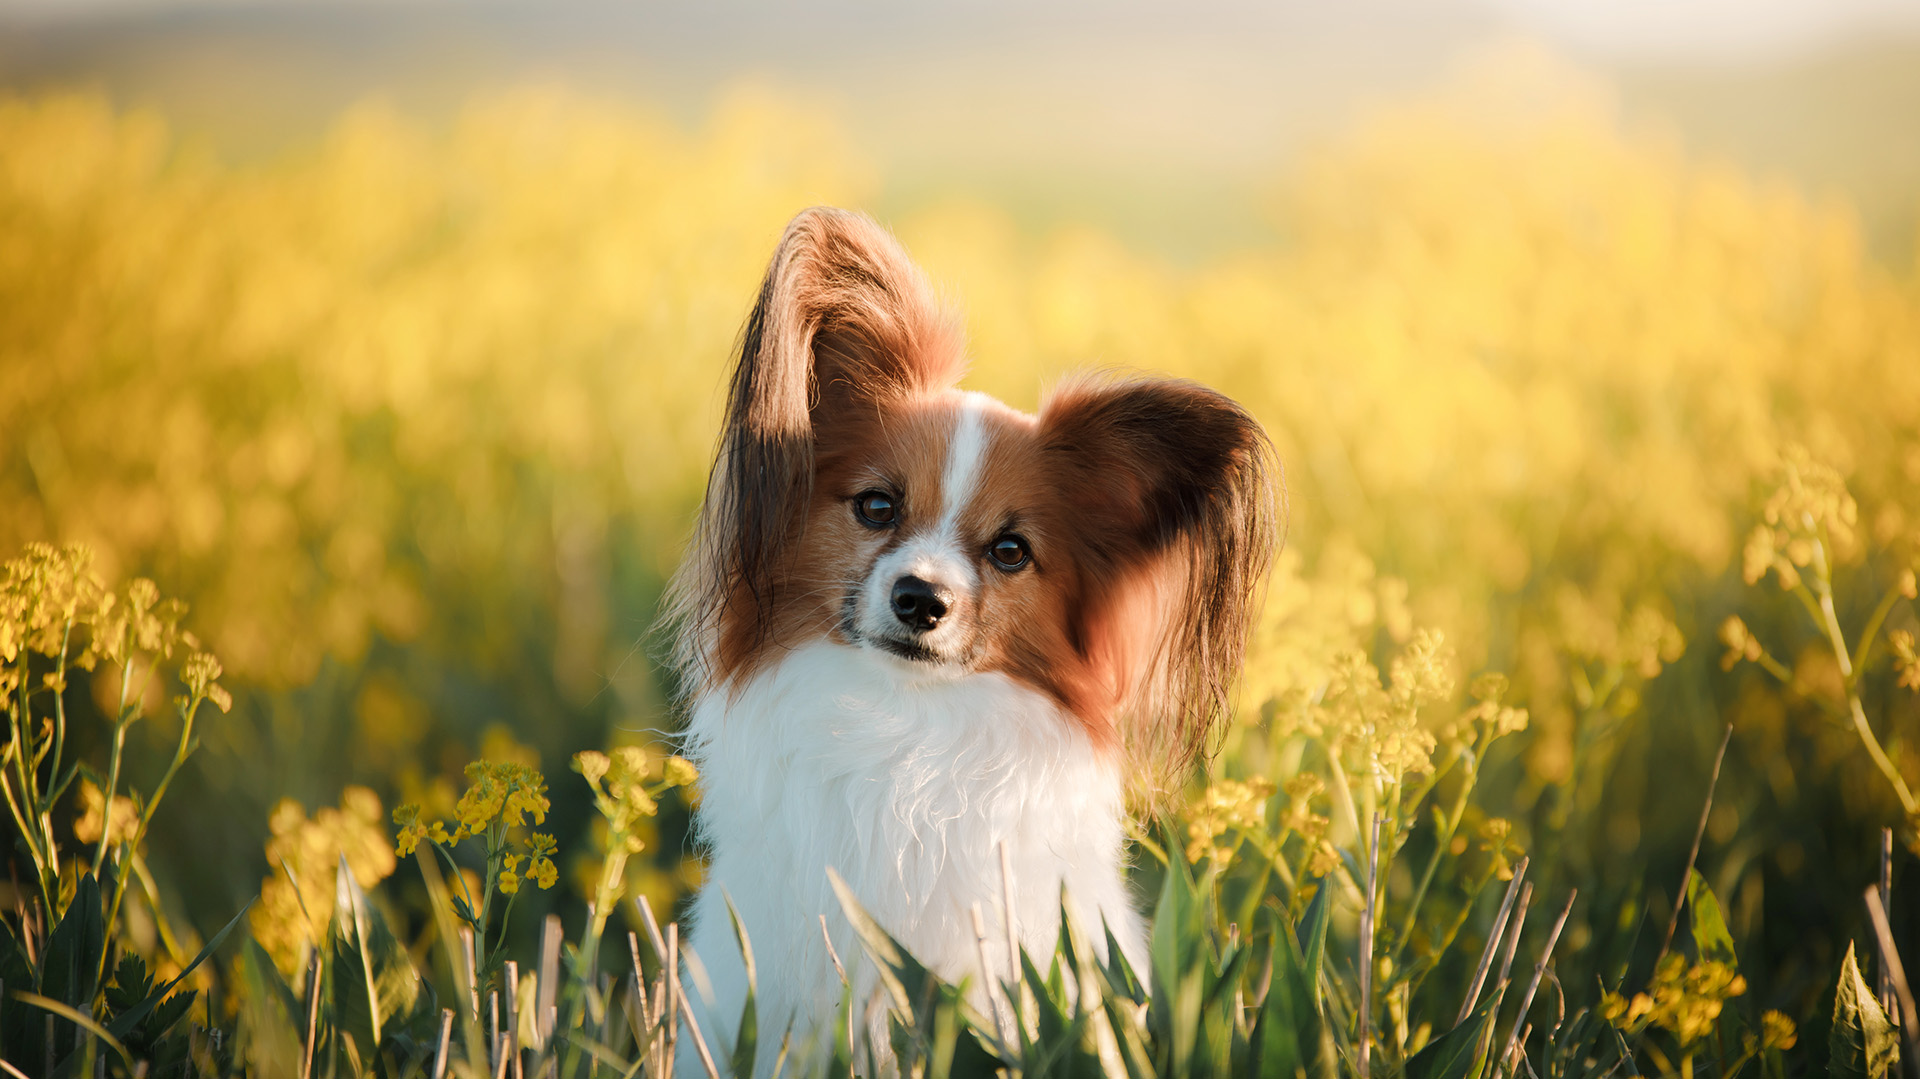 El Papillón se trata de un perro que tiene una gran inteligencia y mucha sociabilidad .(Shutterstock.com)